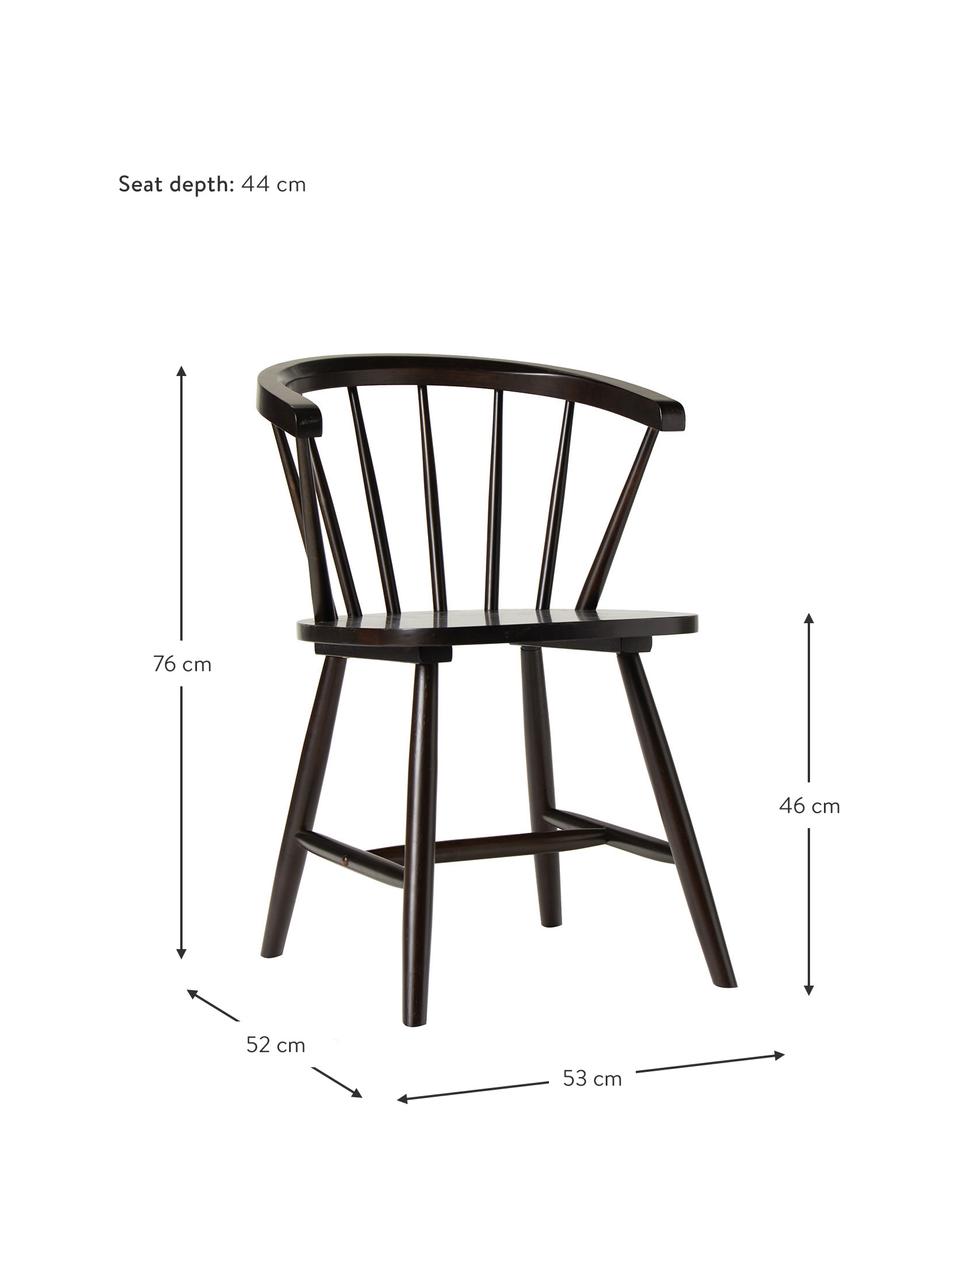 Windsdorské dřevěné židle Megan, 2 ks, Lakované kaučukové dřevo, Kaučukové dřevo, hnědá lakovaná, Š 53 cm, H 52 cm